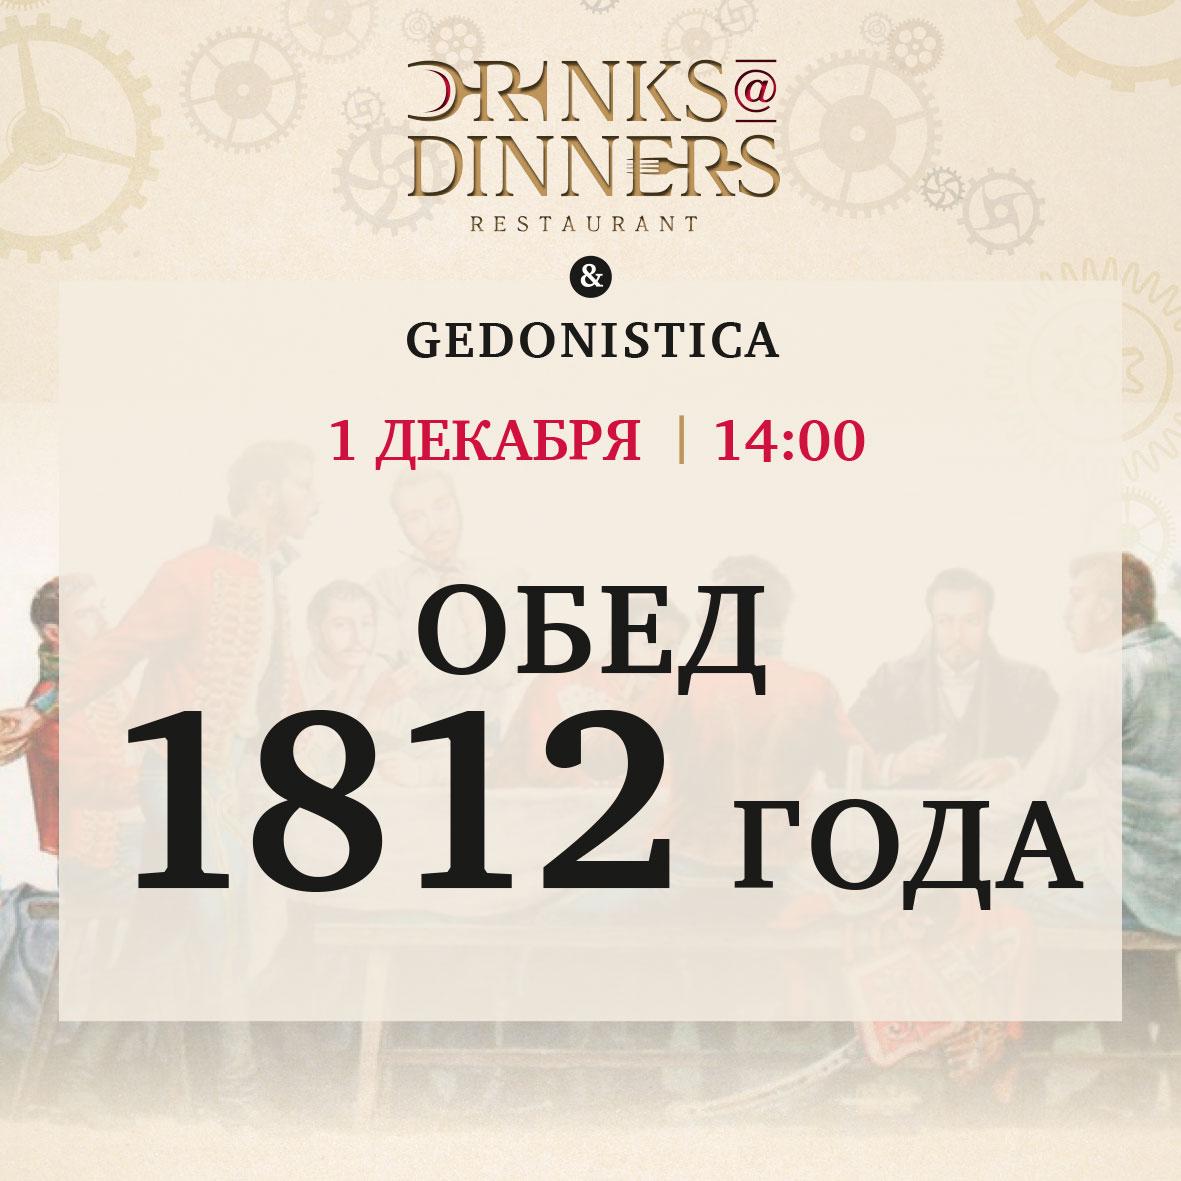 Обед 1812 года в Drinks@Dinners